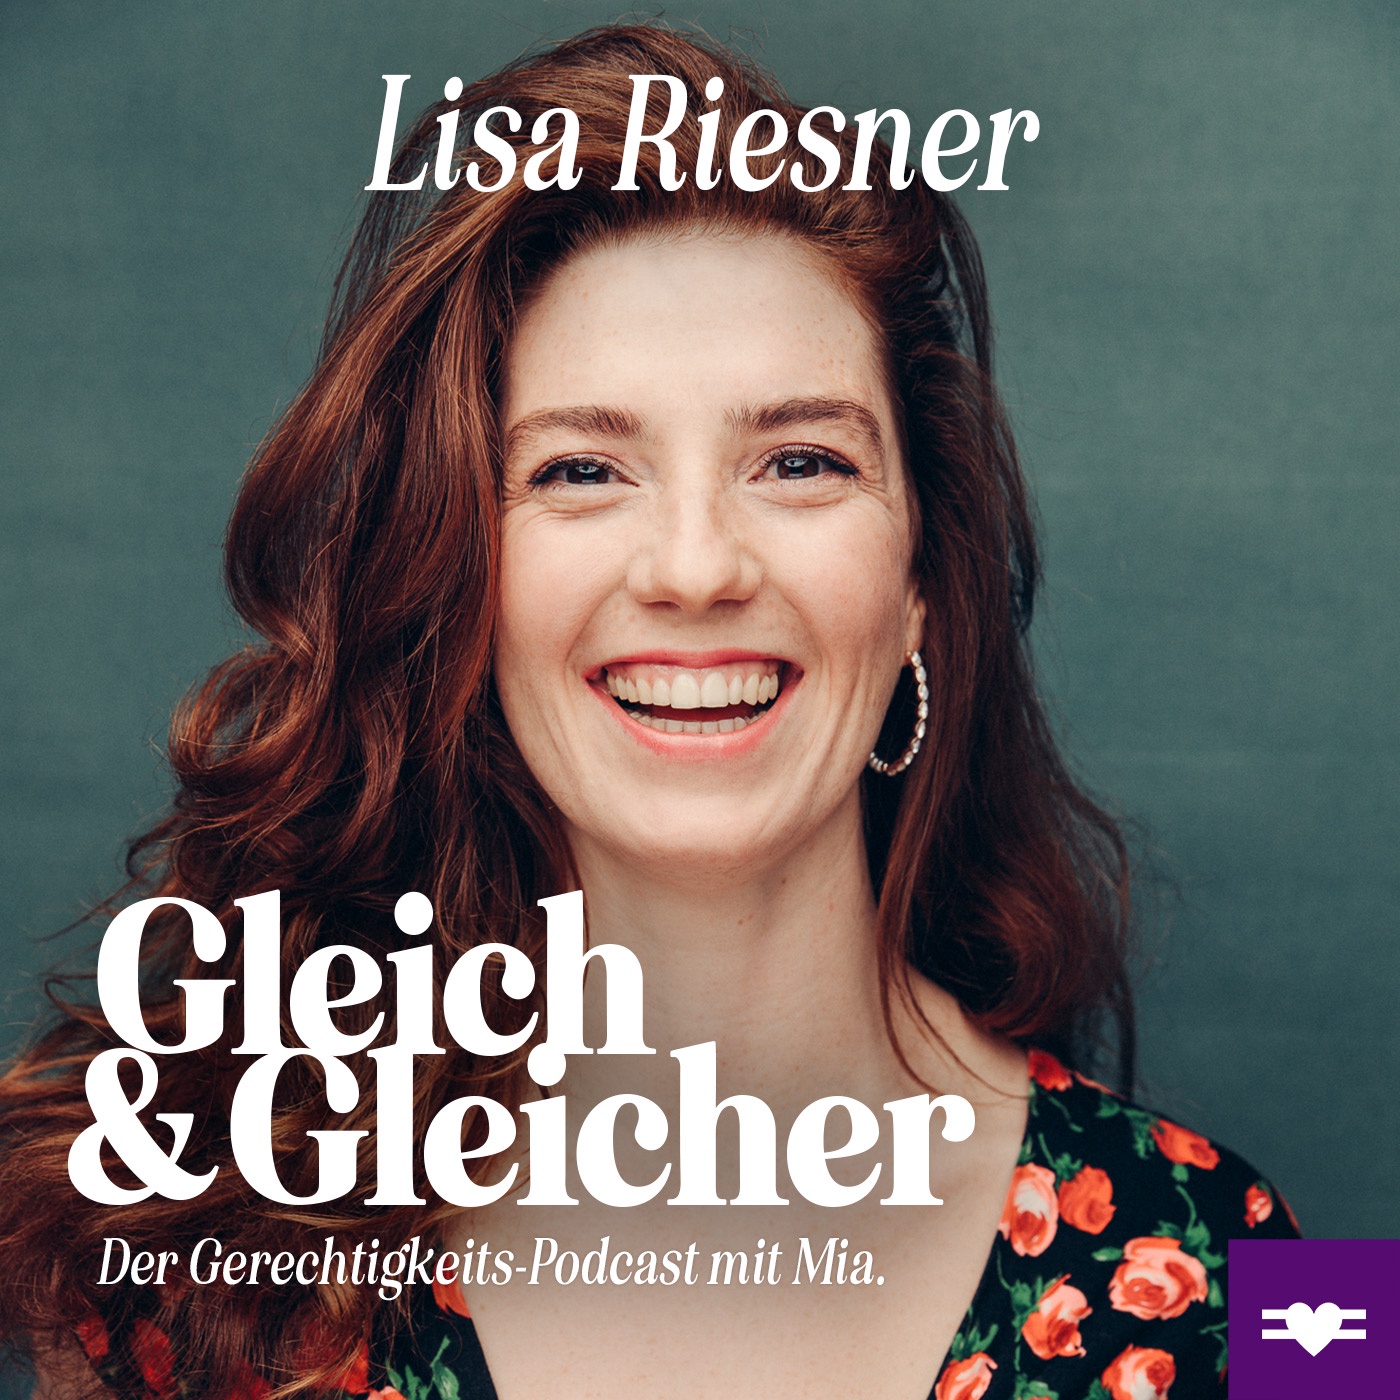 Lisa Riesner über Empowerment, Gleichstellung und Coaching im Film